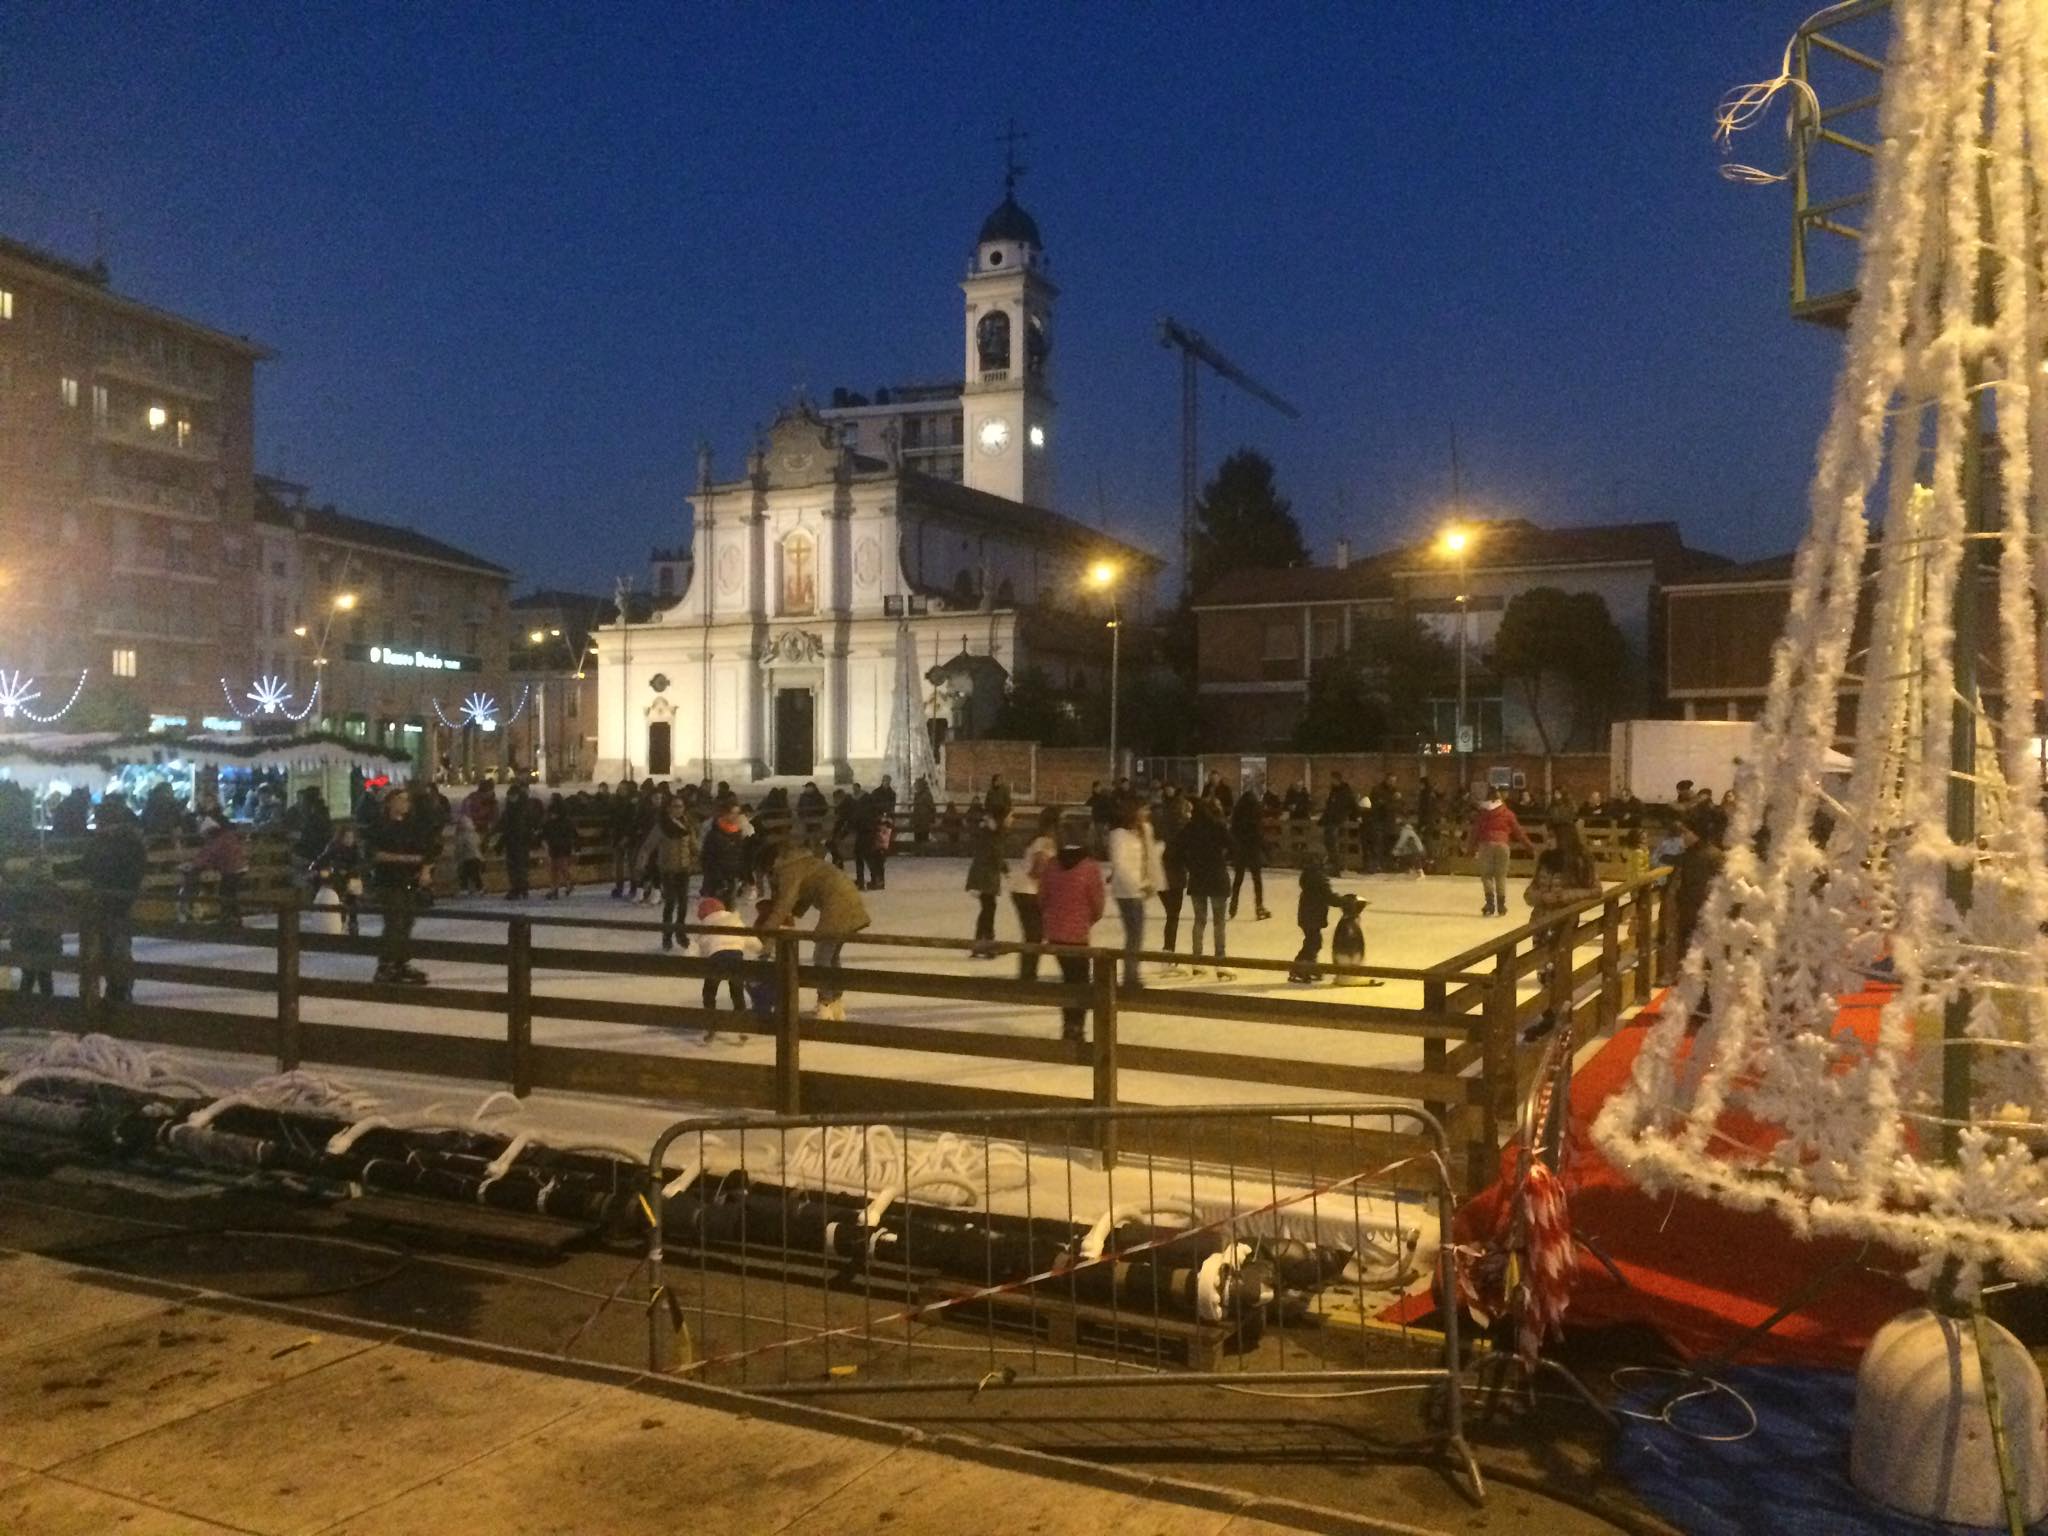 A Cinisello è cominciato il Natale: apre la pista di pattinaggio